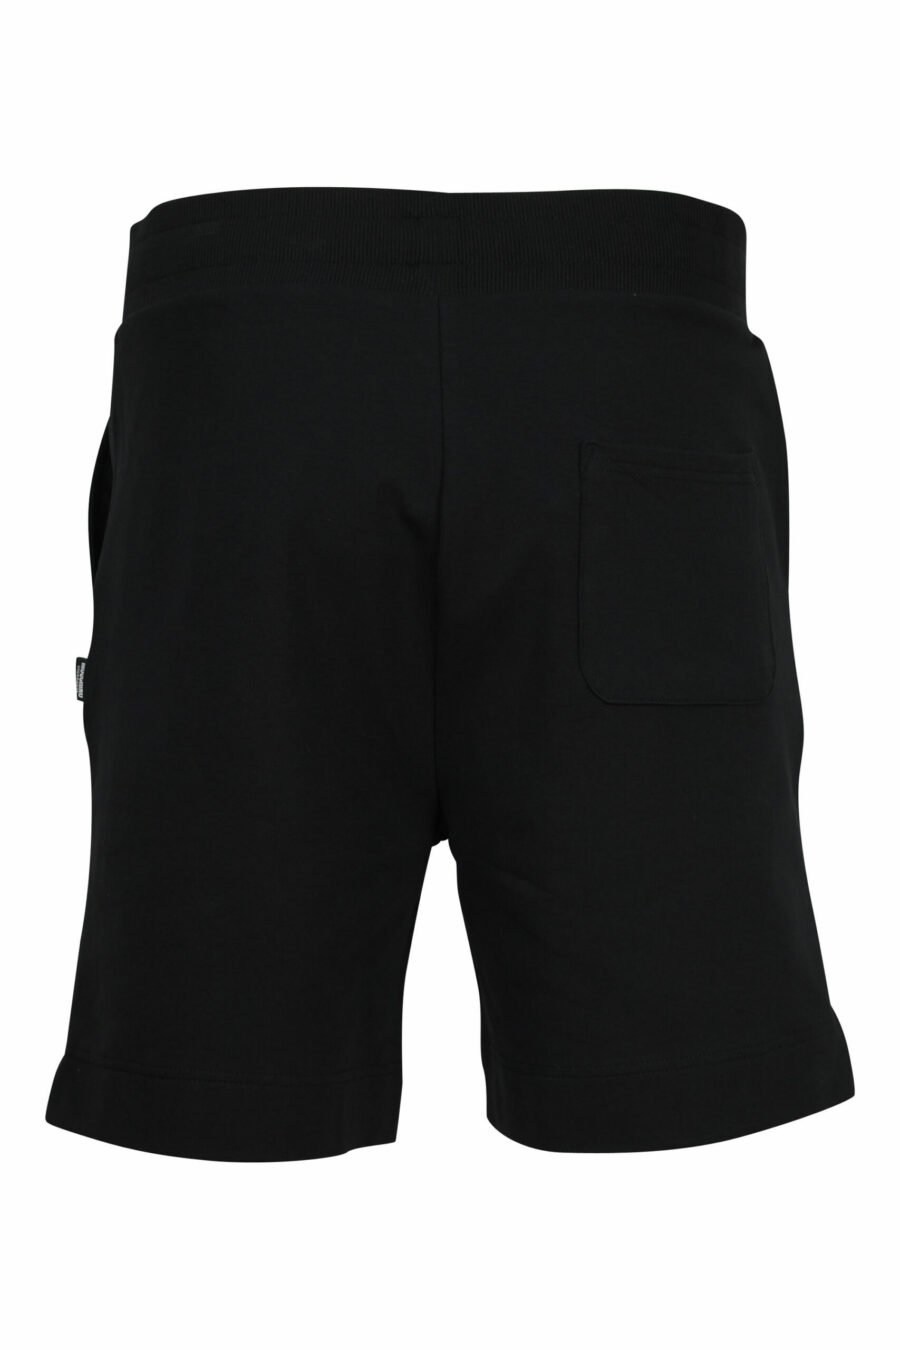 Pantalón de chándal corto negro con minilogo oso "underbear" en goma negro - 667113622200 1 scaled